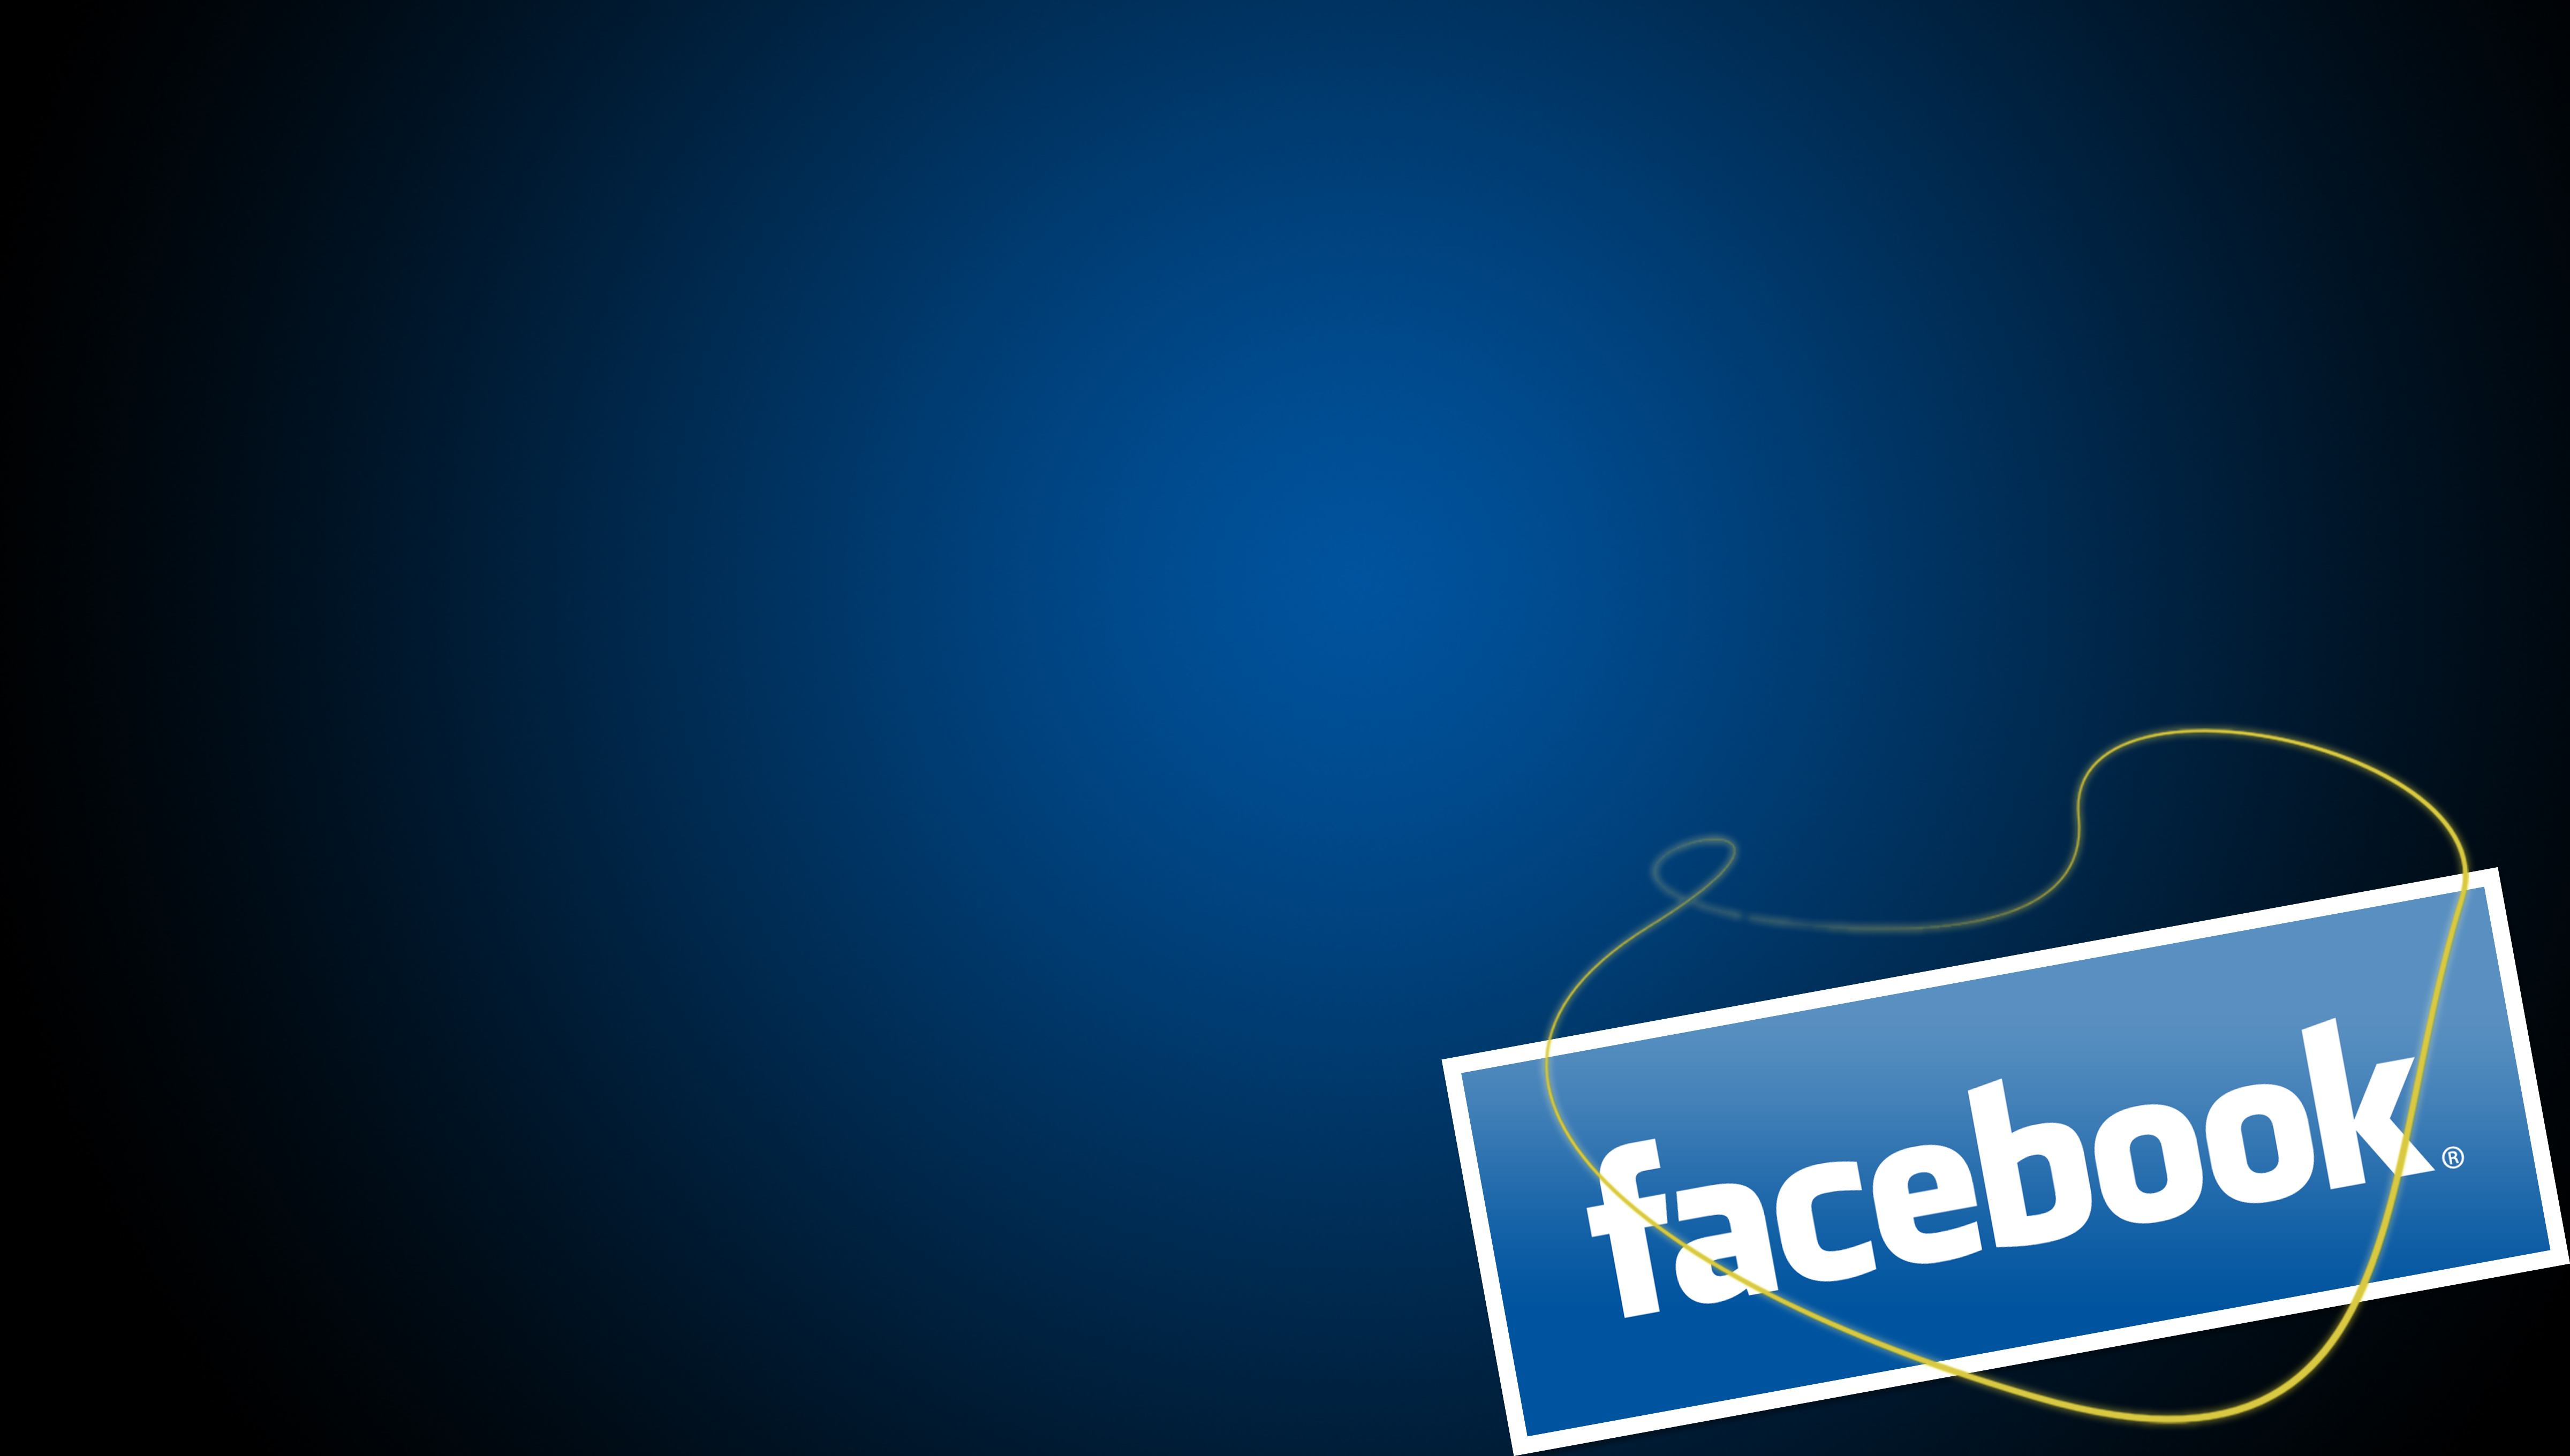 immagini di sfondo per facebook,blu,testo,font,disegno grafico,blu elettrico